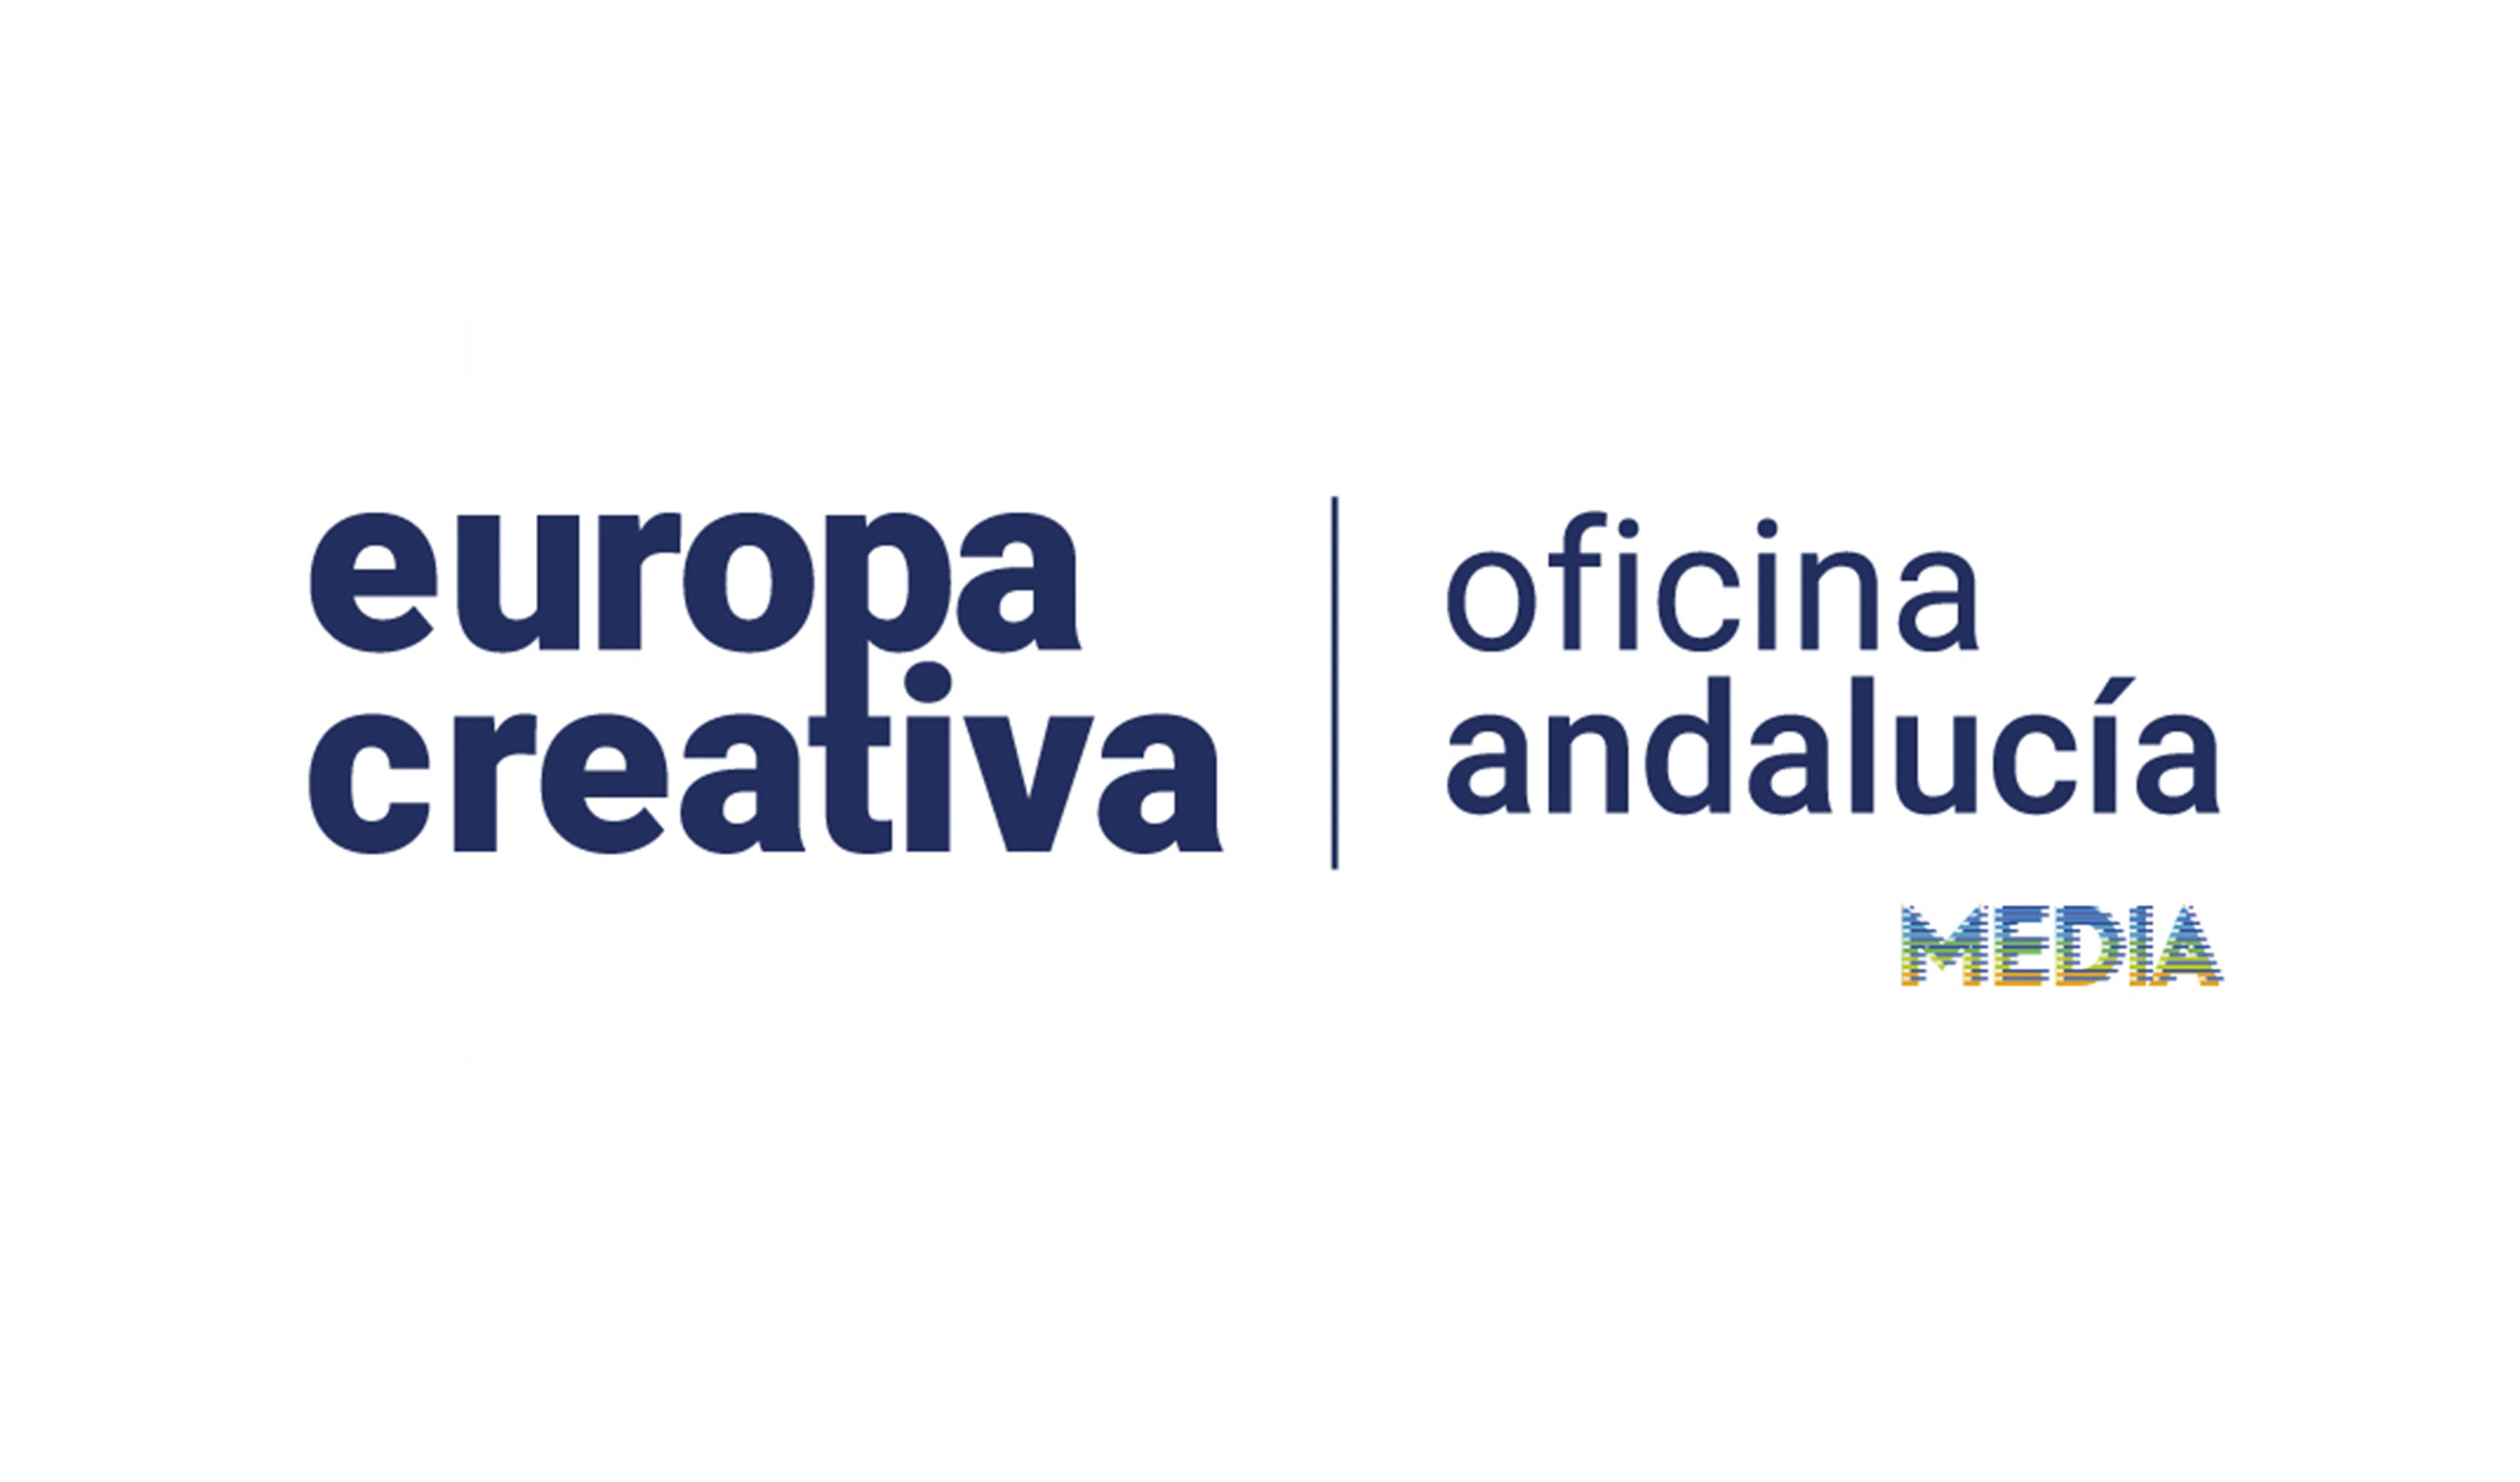 EUROPA CREATIVA MEDIA ANDALUCIA